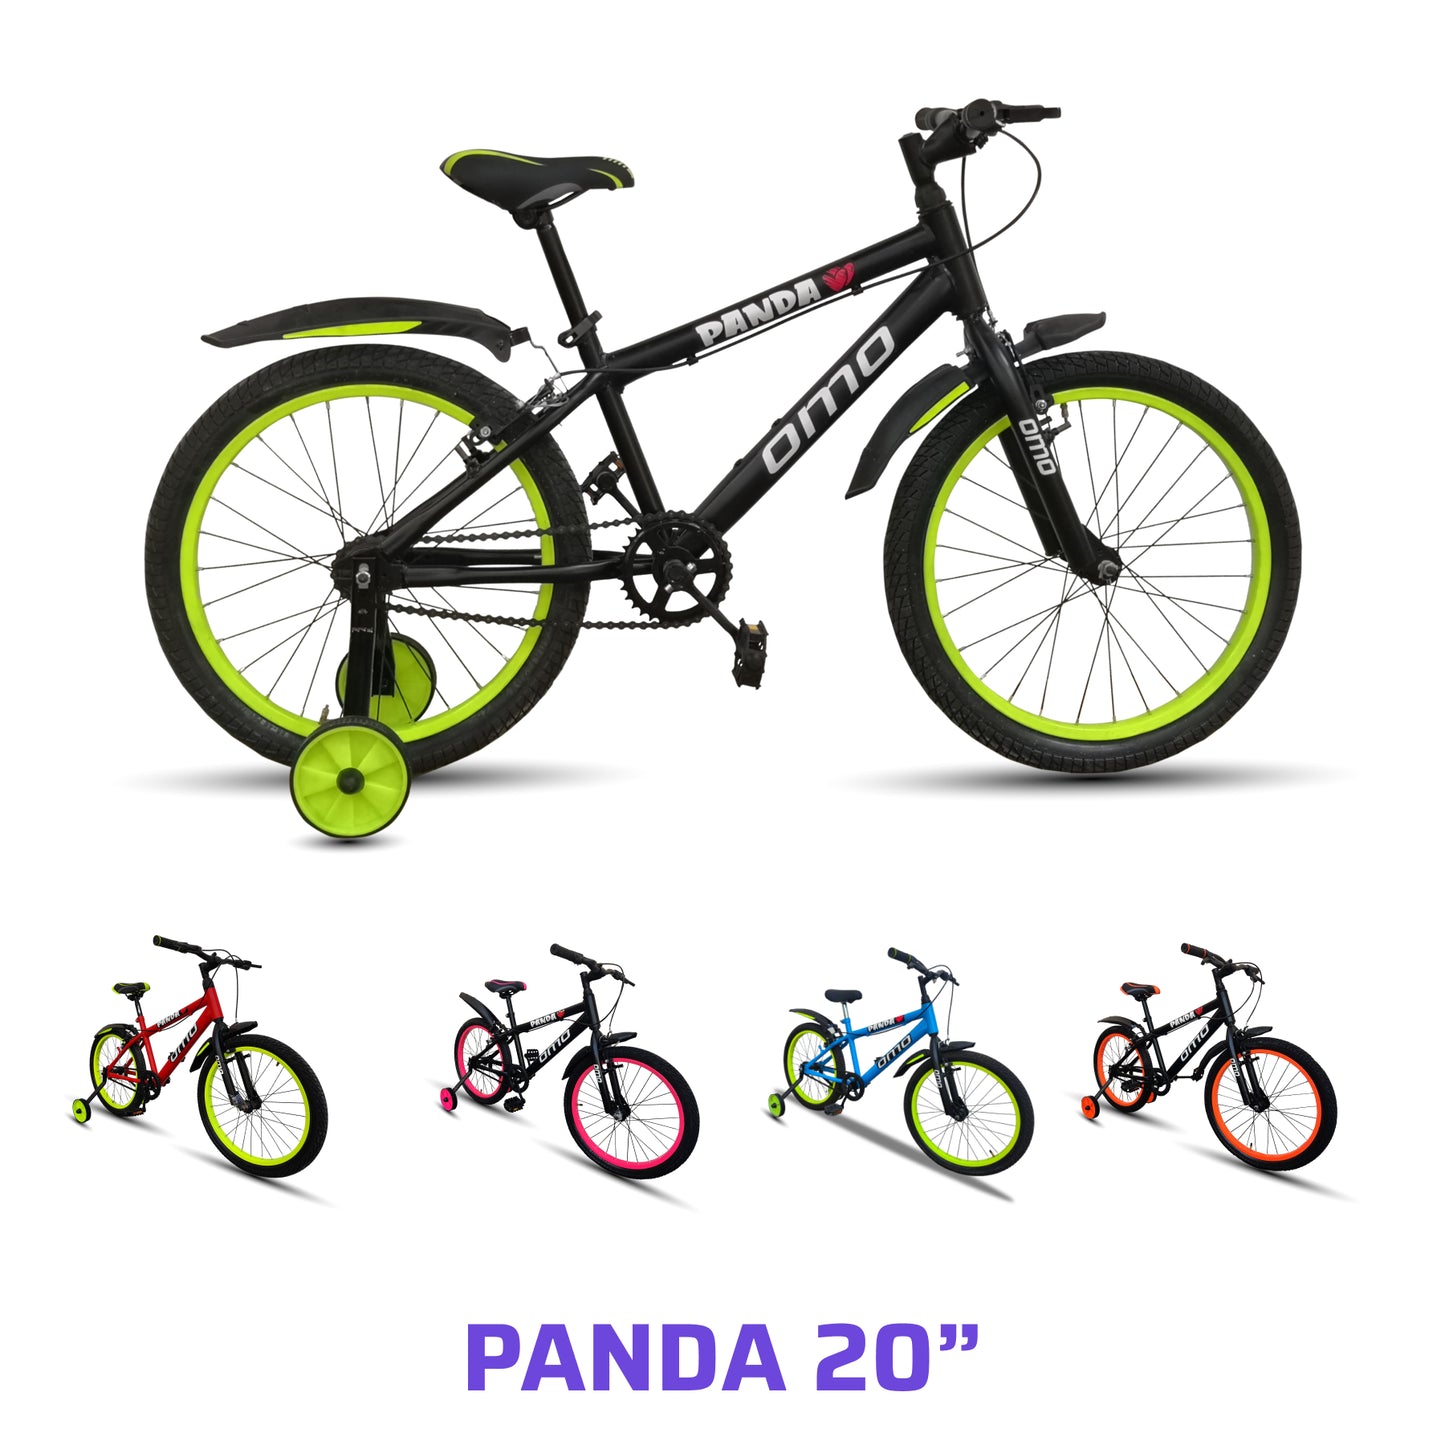 Panda 20T - Kids Bicycle (5 to 8 Years)